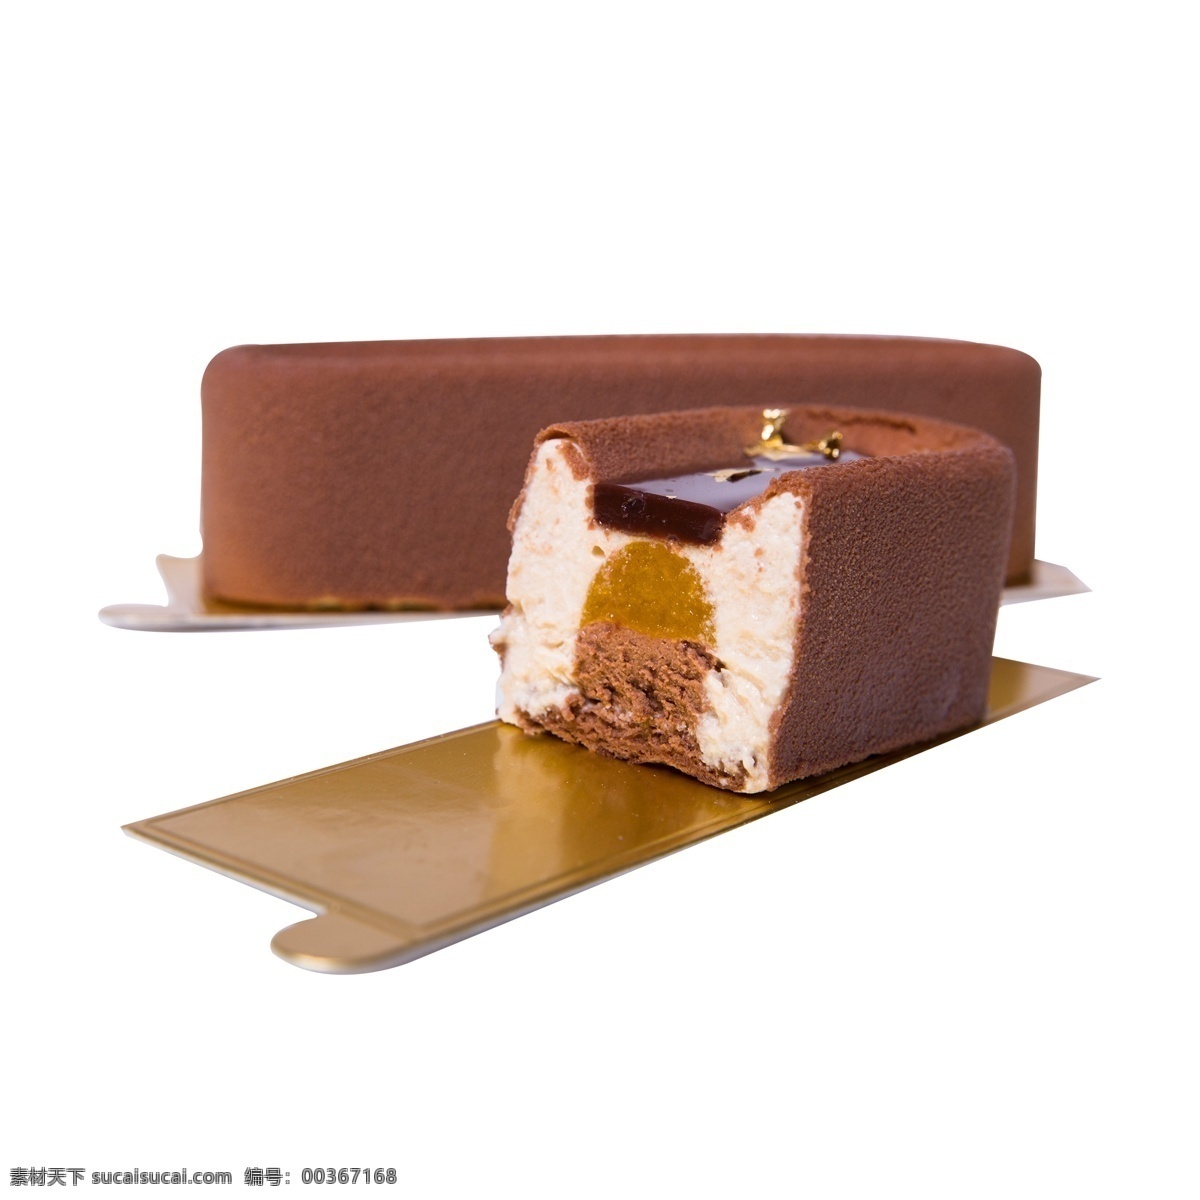 法式 方块 巧克力 远镜 方块巧克力 巧克力点心 点心 甜点 美食 法式甜品 甜品 朱古力 两个 两个巧克力